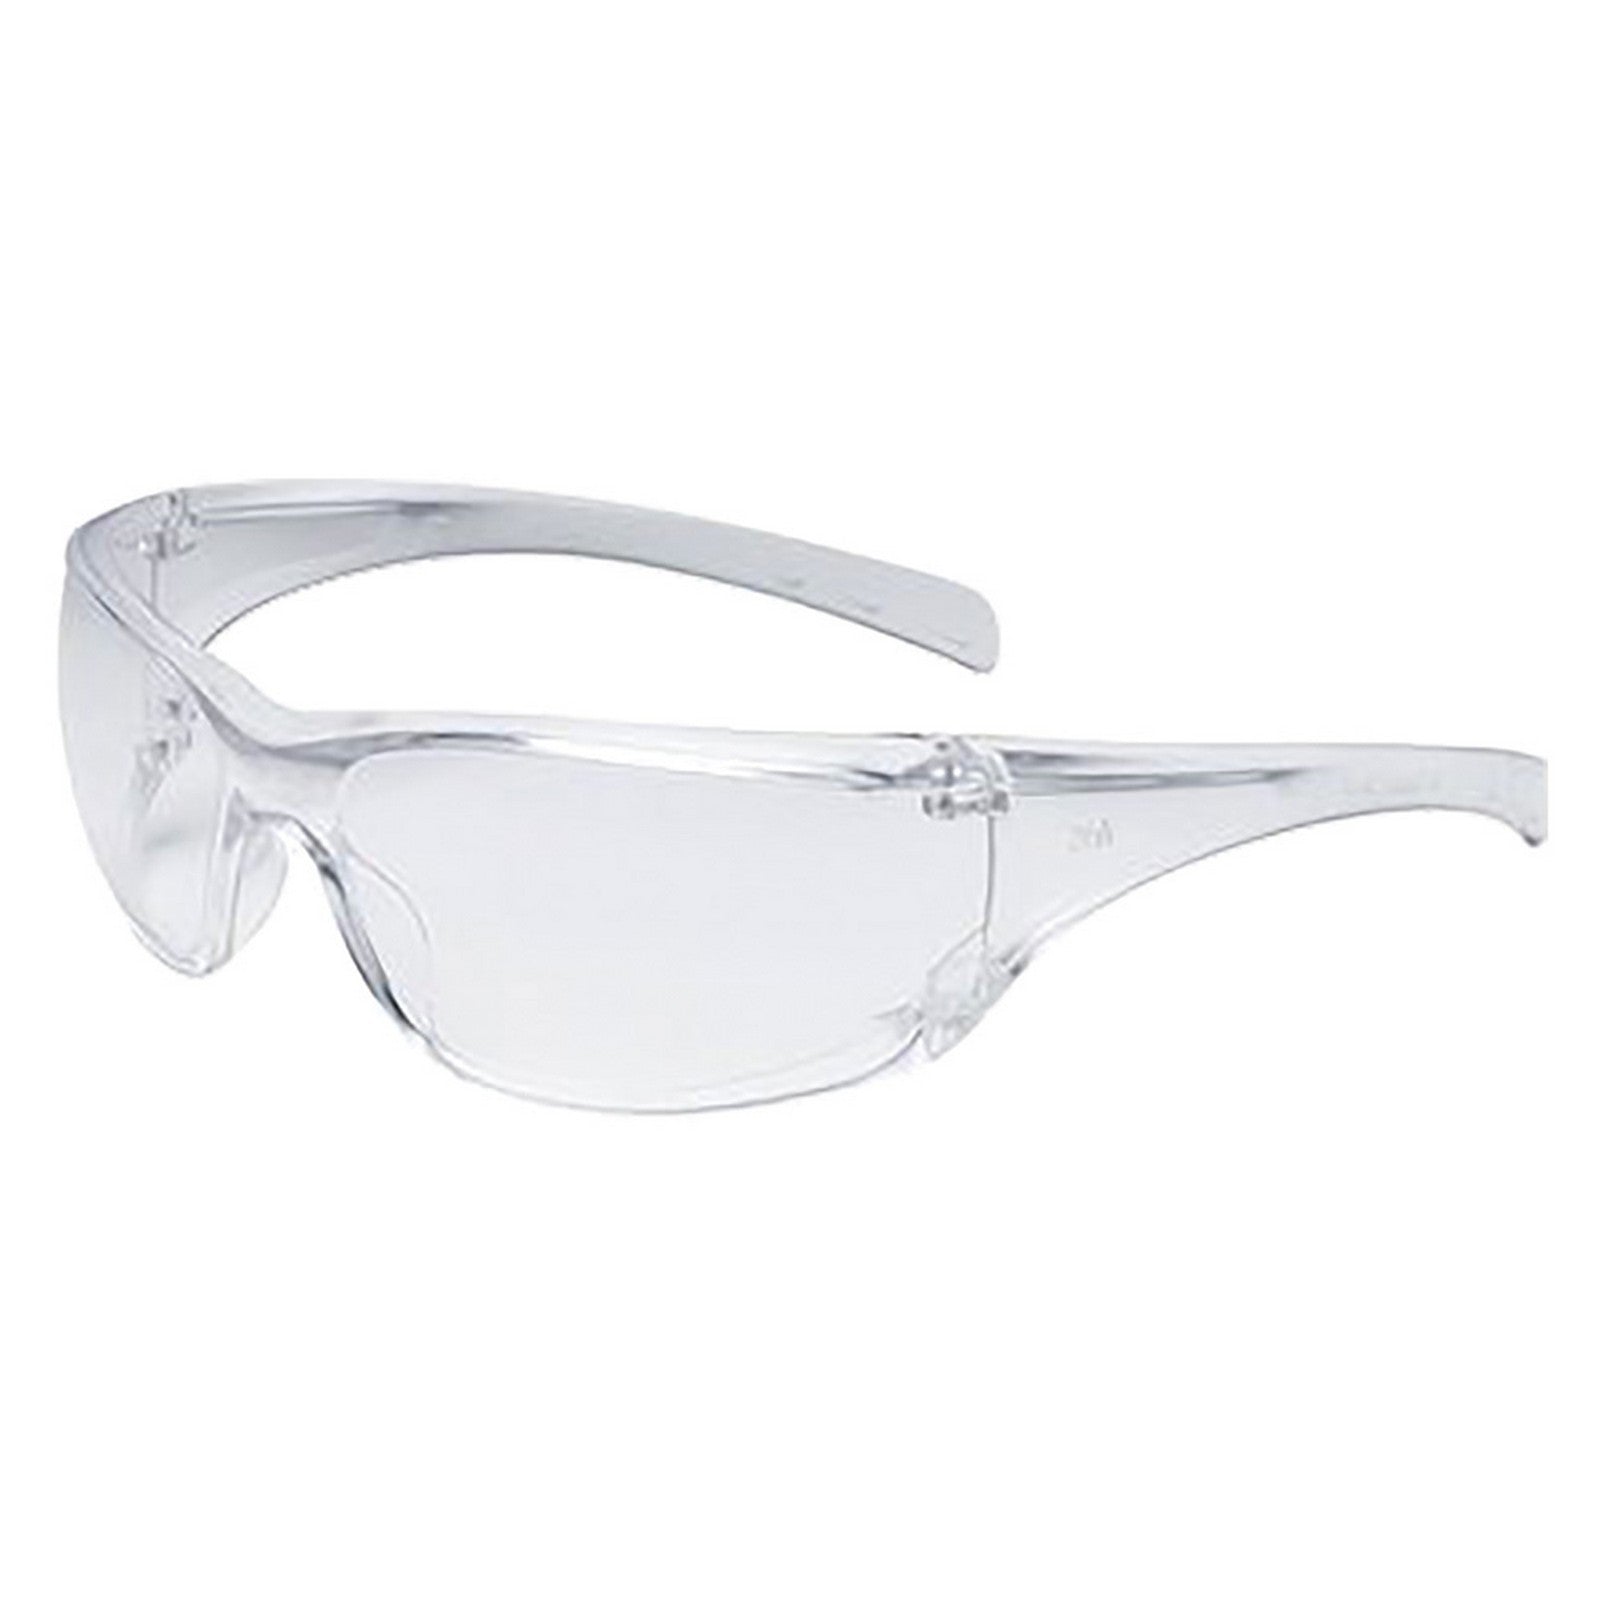 occhiali da lavoro 'virtua ap' lente trasparente cod:ferx.1065280nlm